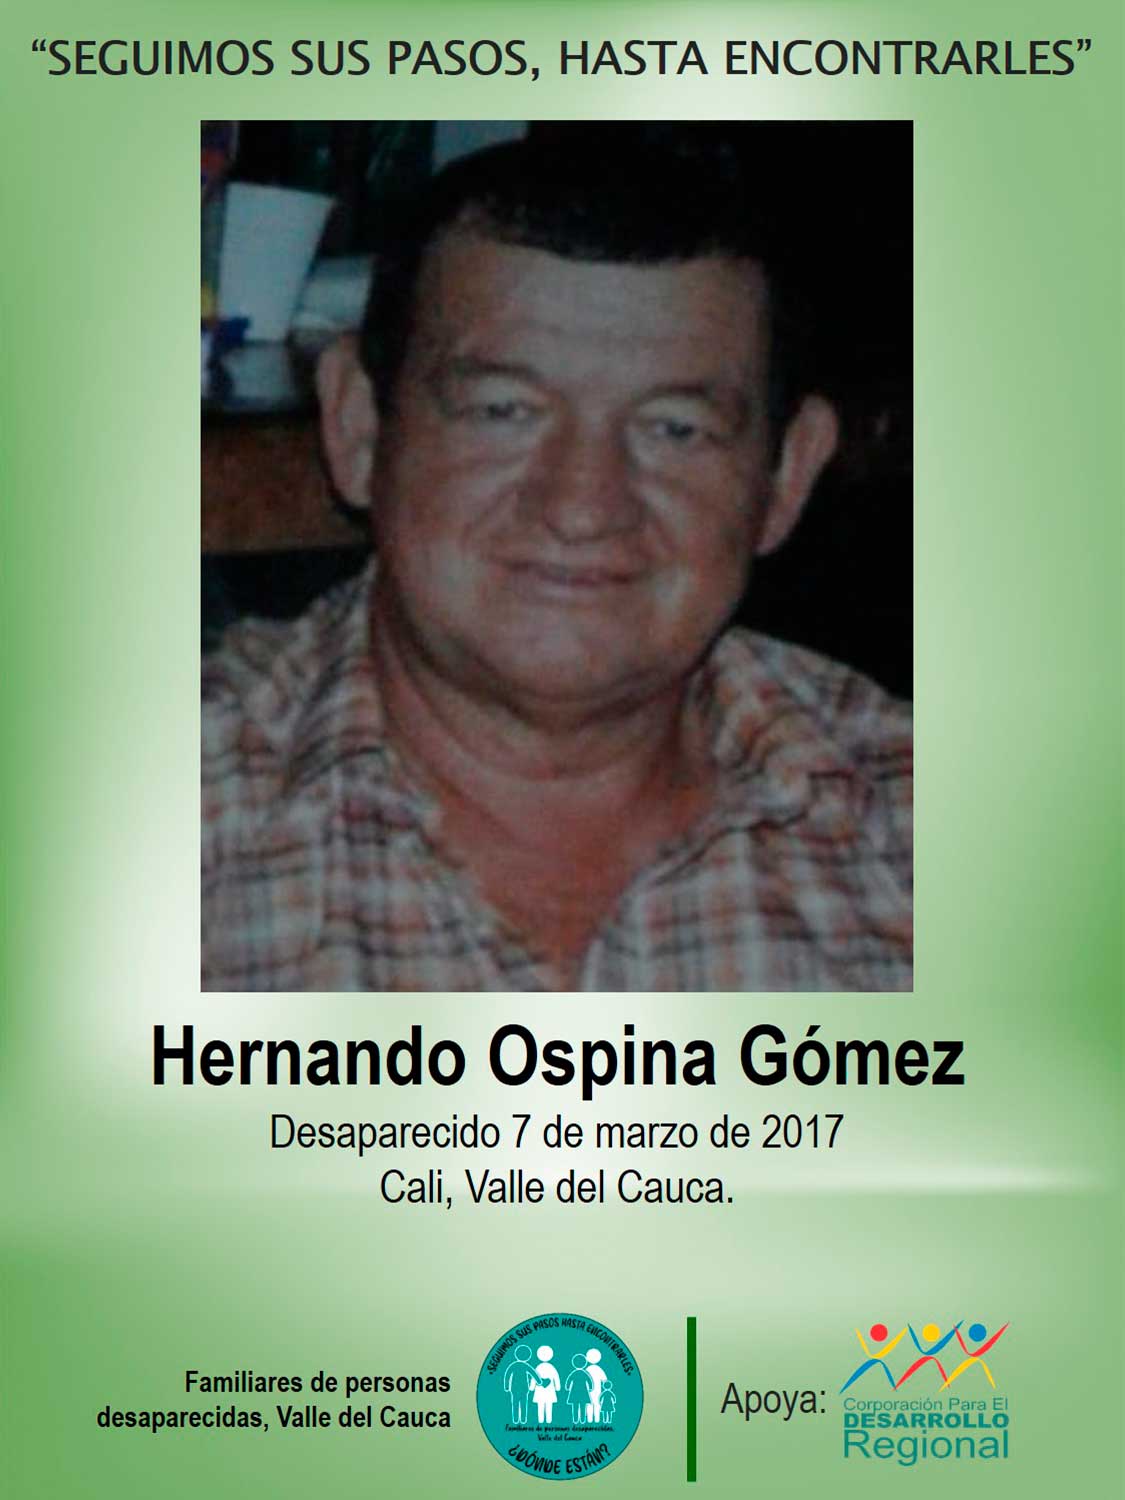 Hernando Ospina Gómez